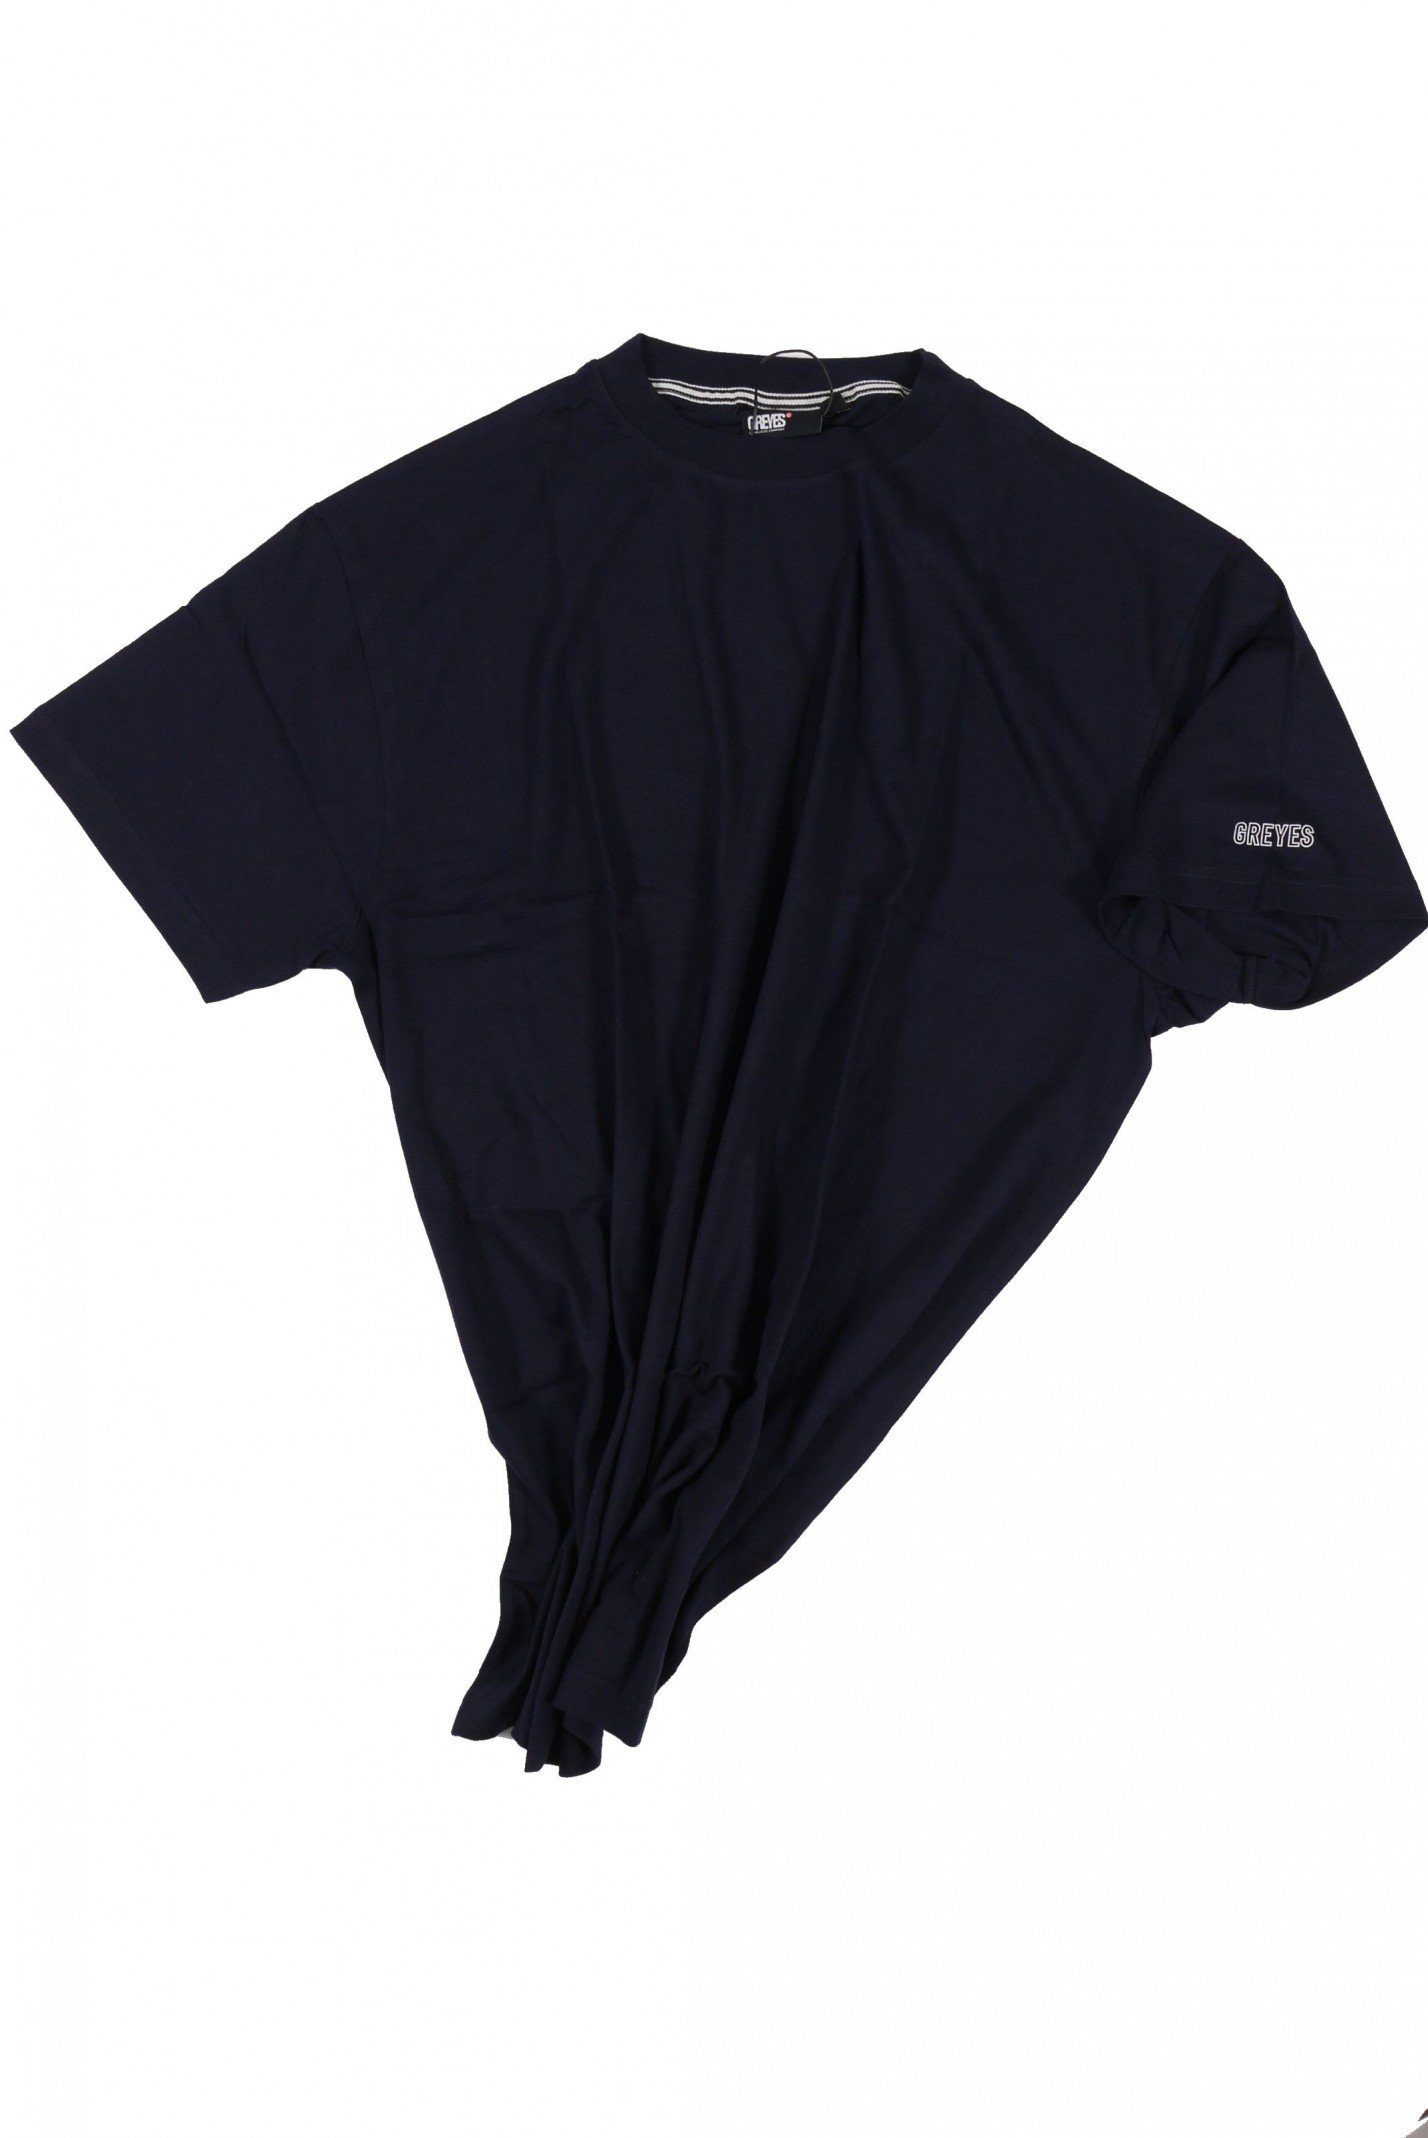 Allsize bis dunkelblau T-Shirt in Herrenübergröße north 4 T-Shirt 56 8XL, von